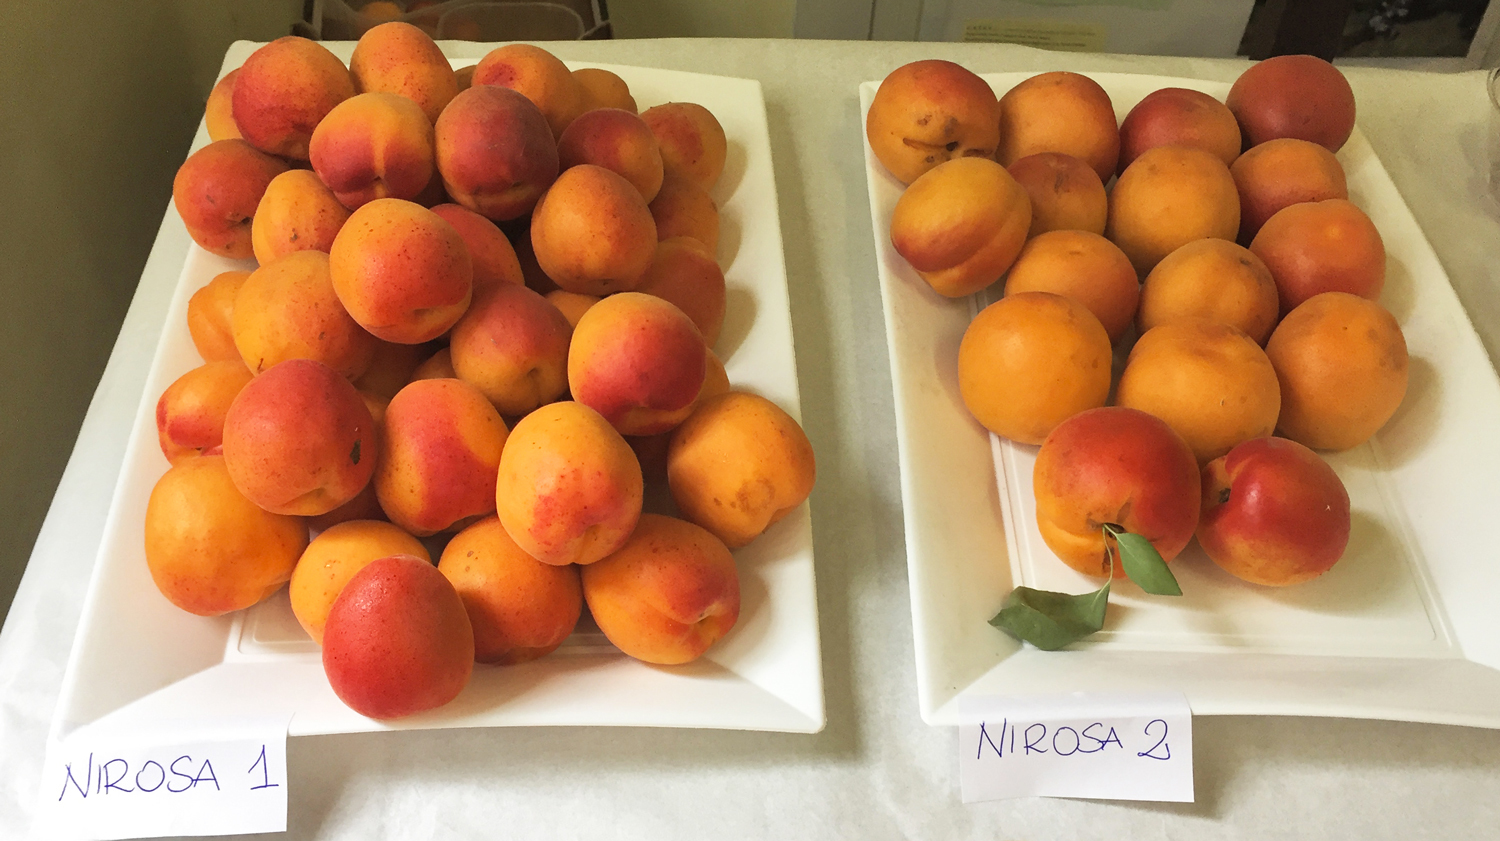 Nirosa 1 e Nirosa 2: il frutto della ricerca di Geoplant e Maspes